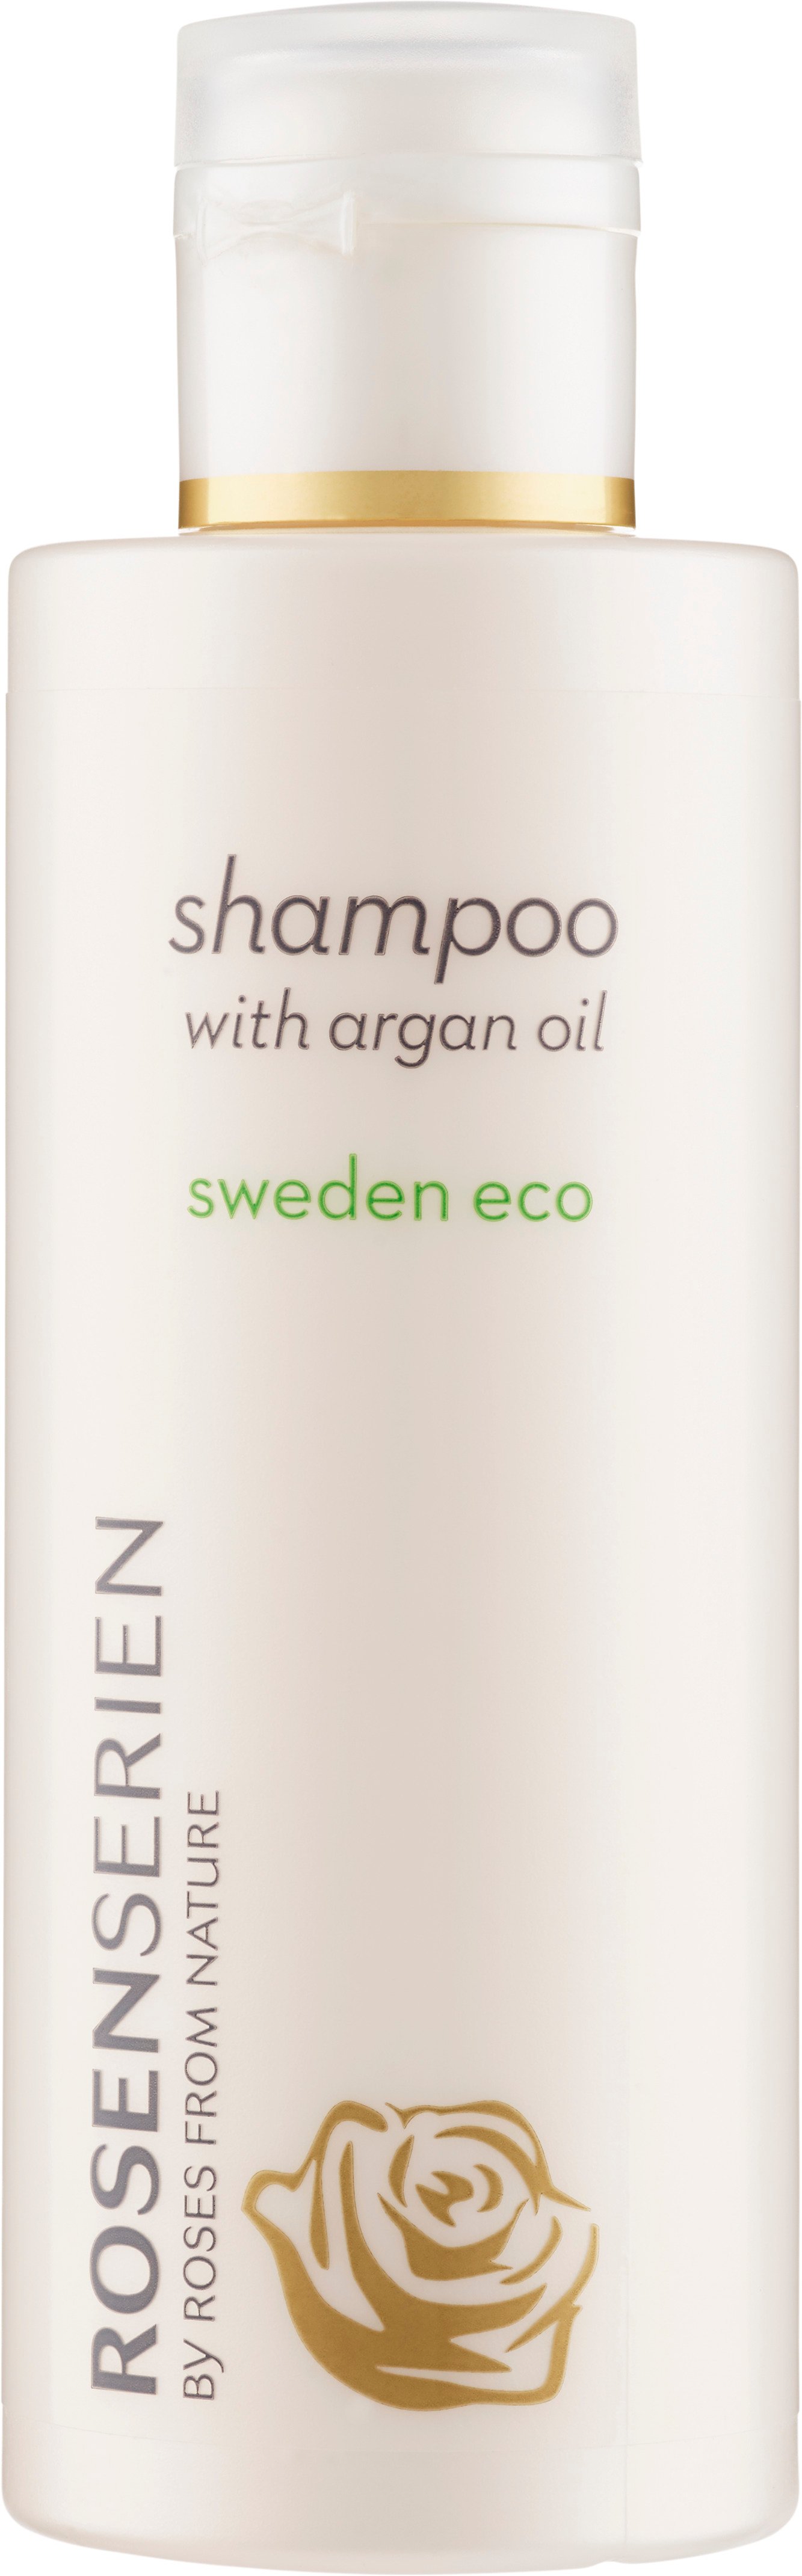 Rosenserien Shampoo Argan Oil 200 ml